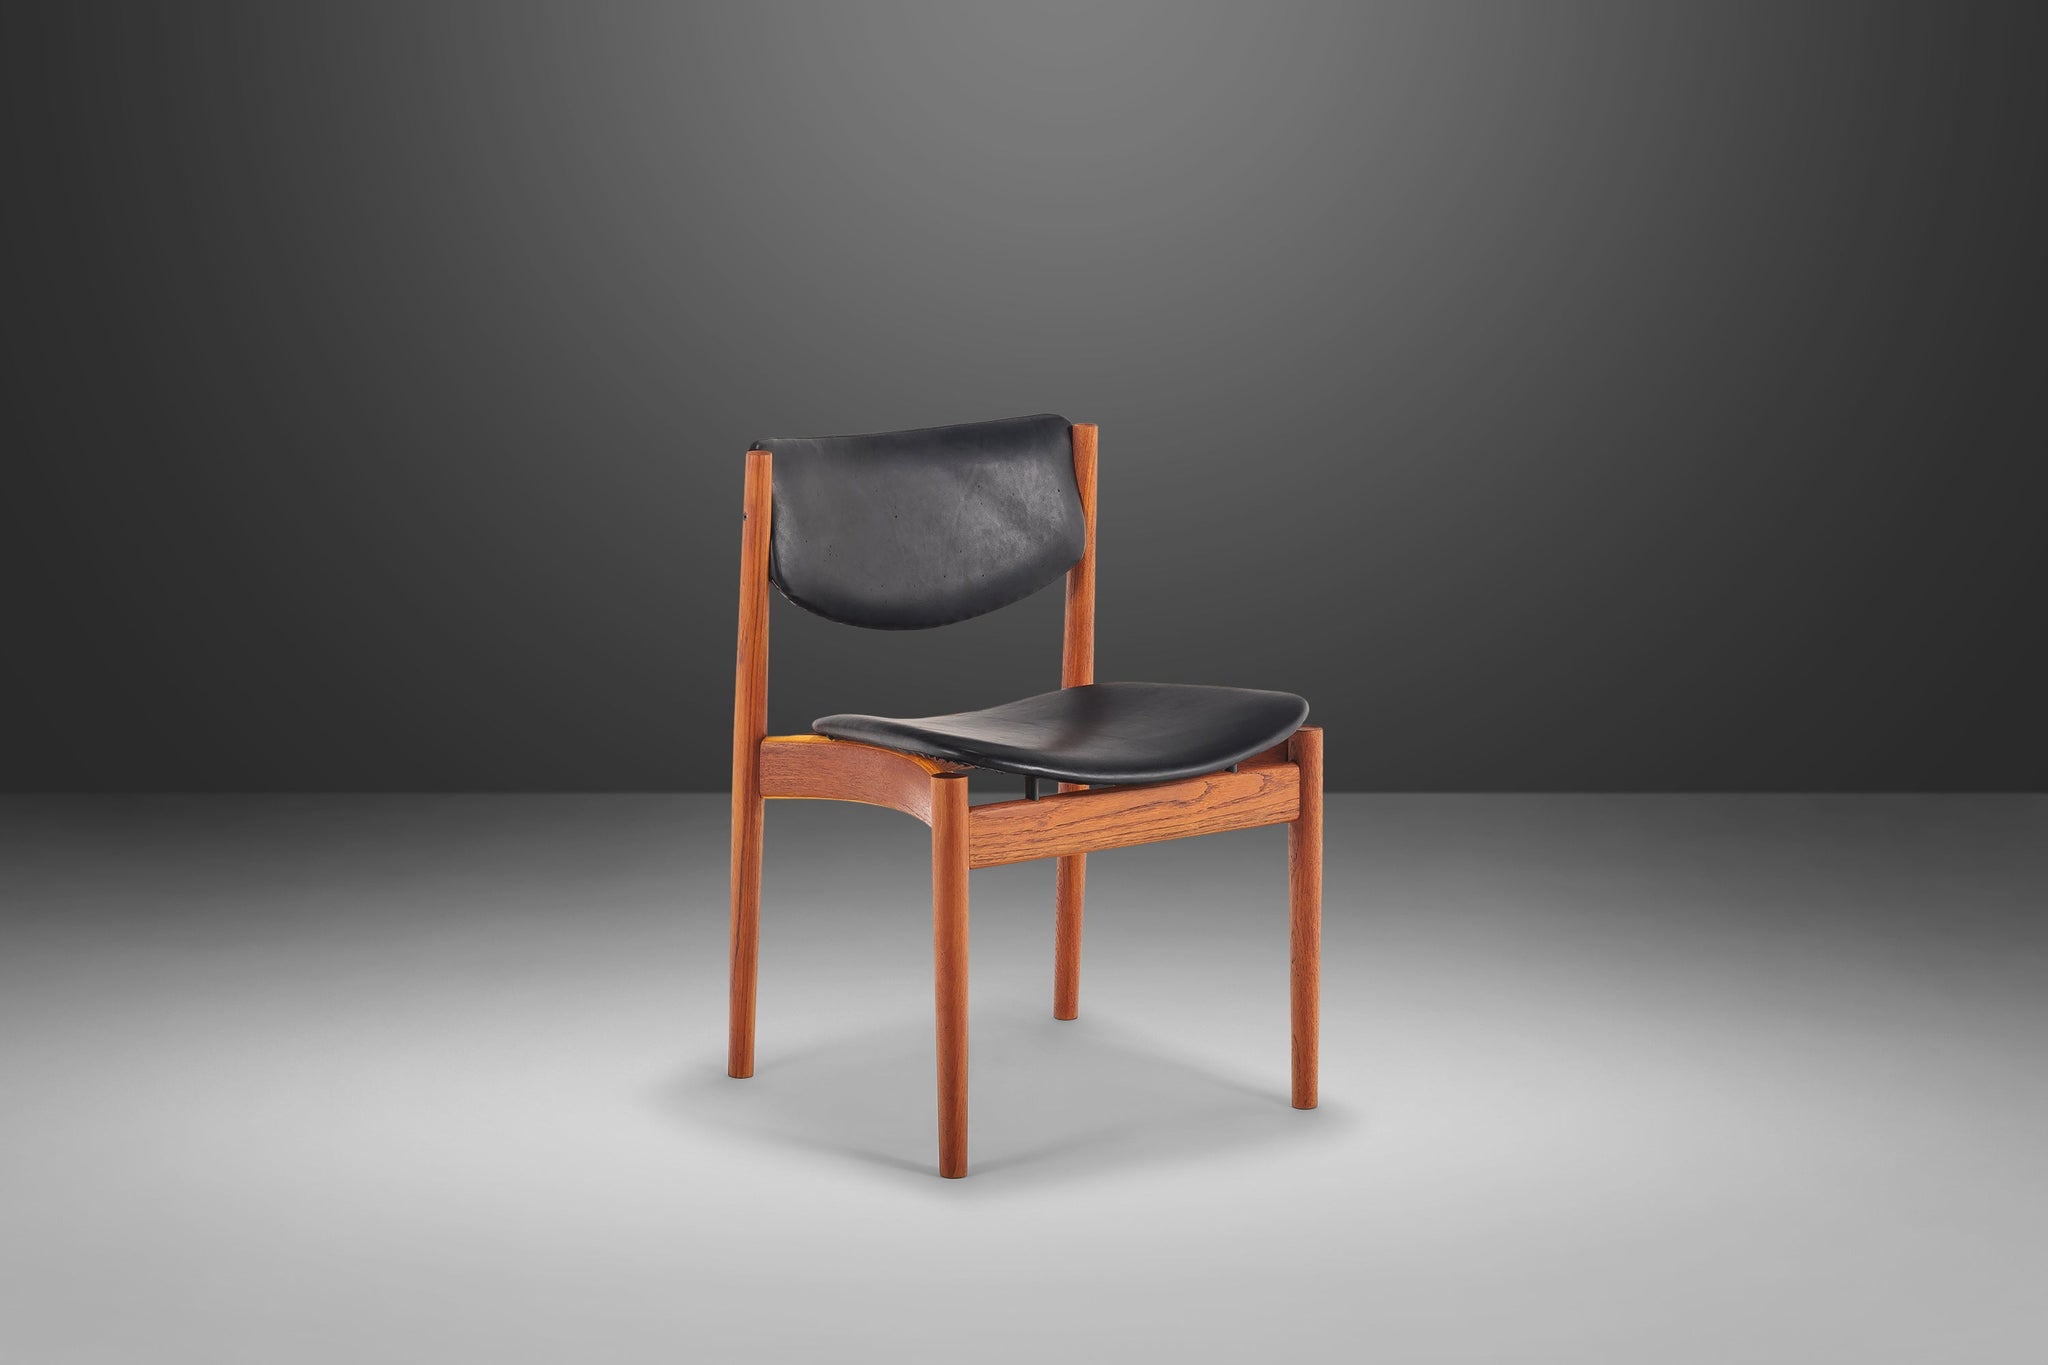 Franc in Side by 197 Model Walnut for Chair Desk Finn Juhl / Leather &